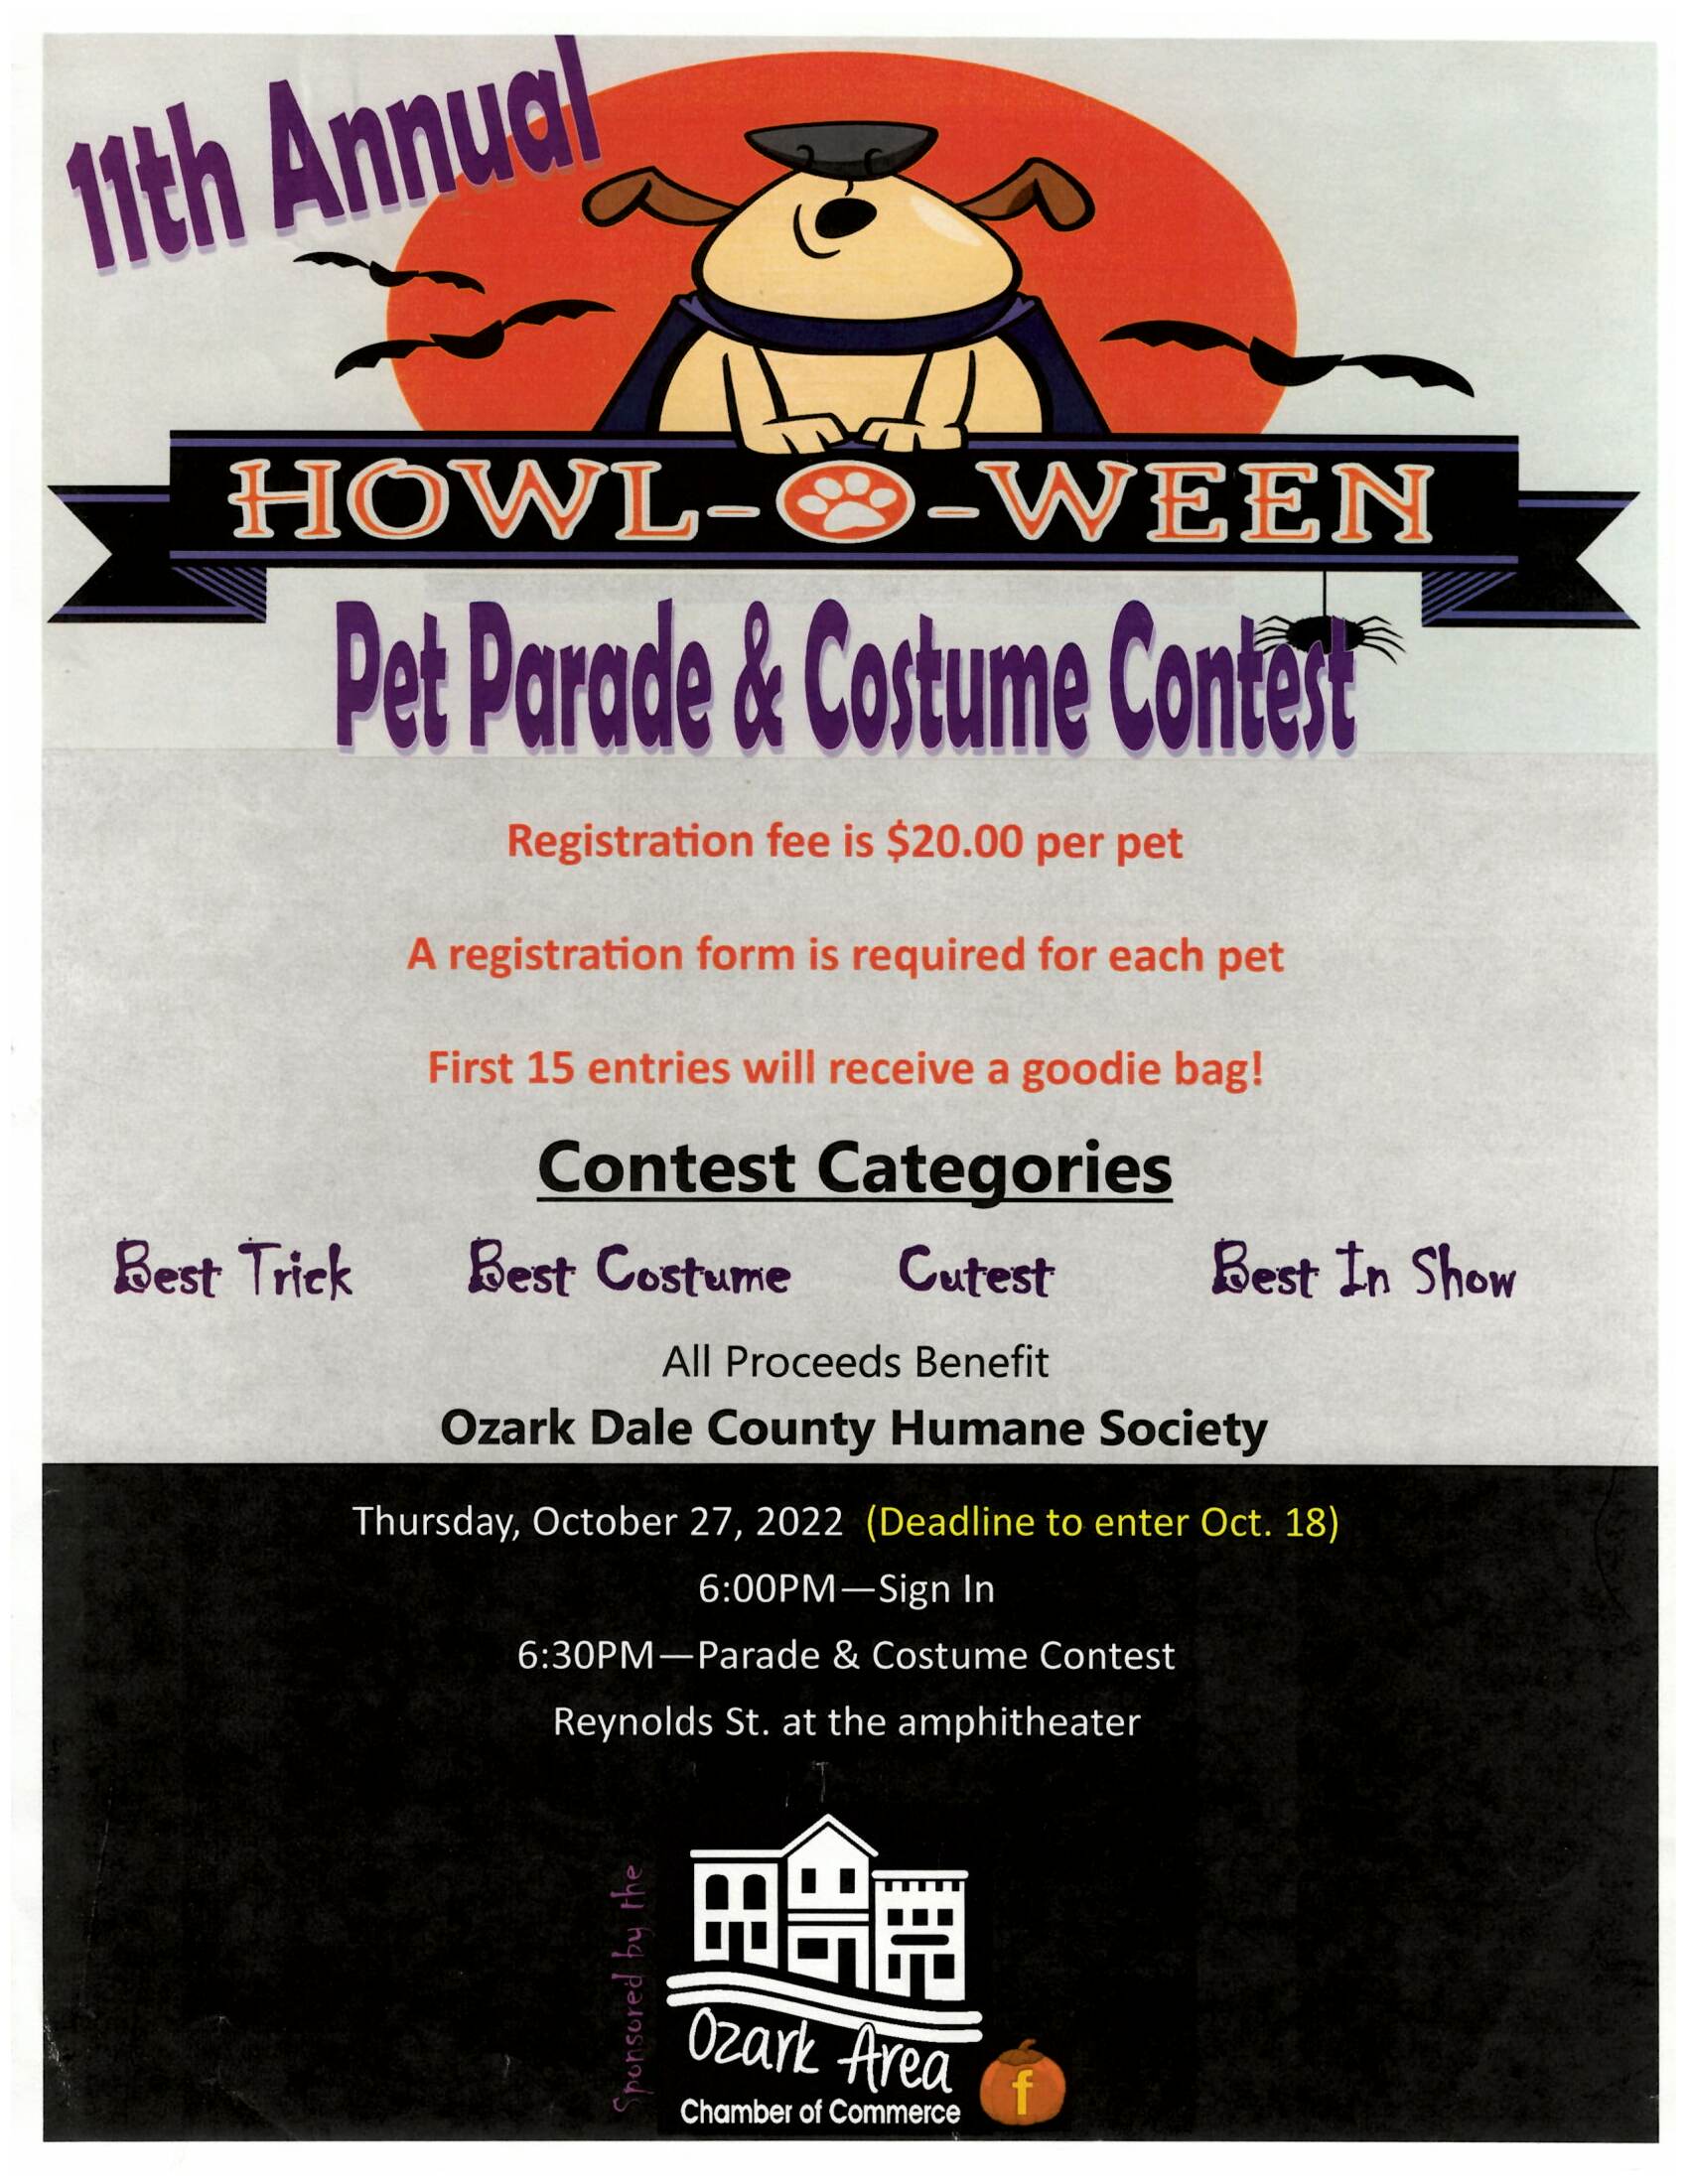 Howl-o-ween Pet Parade & Costume Contest